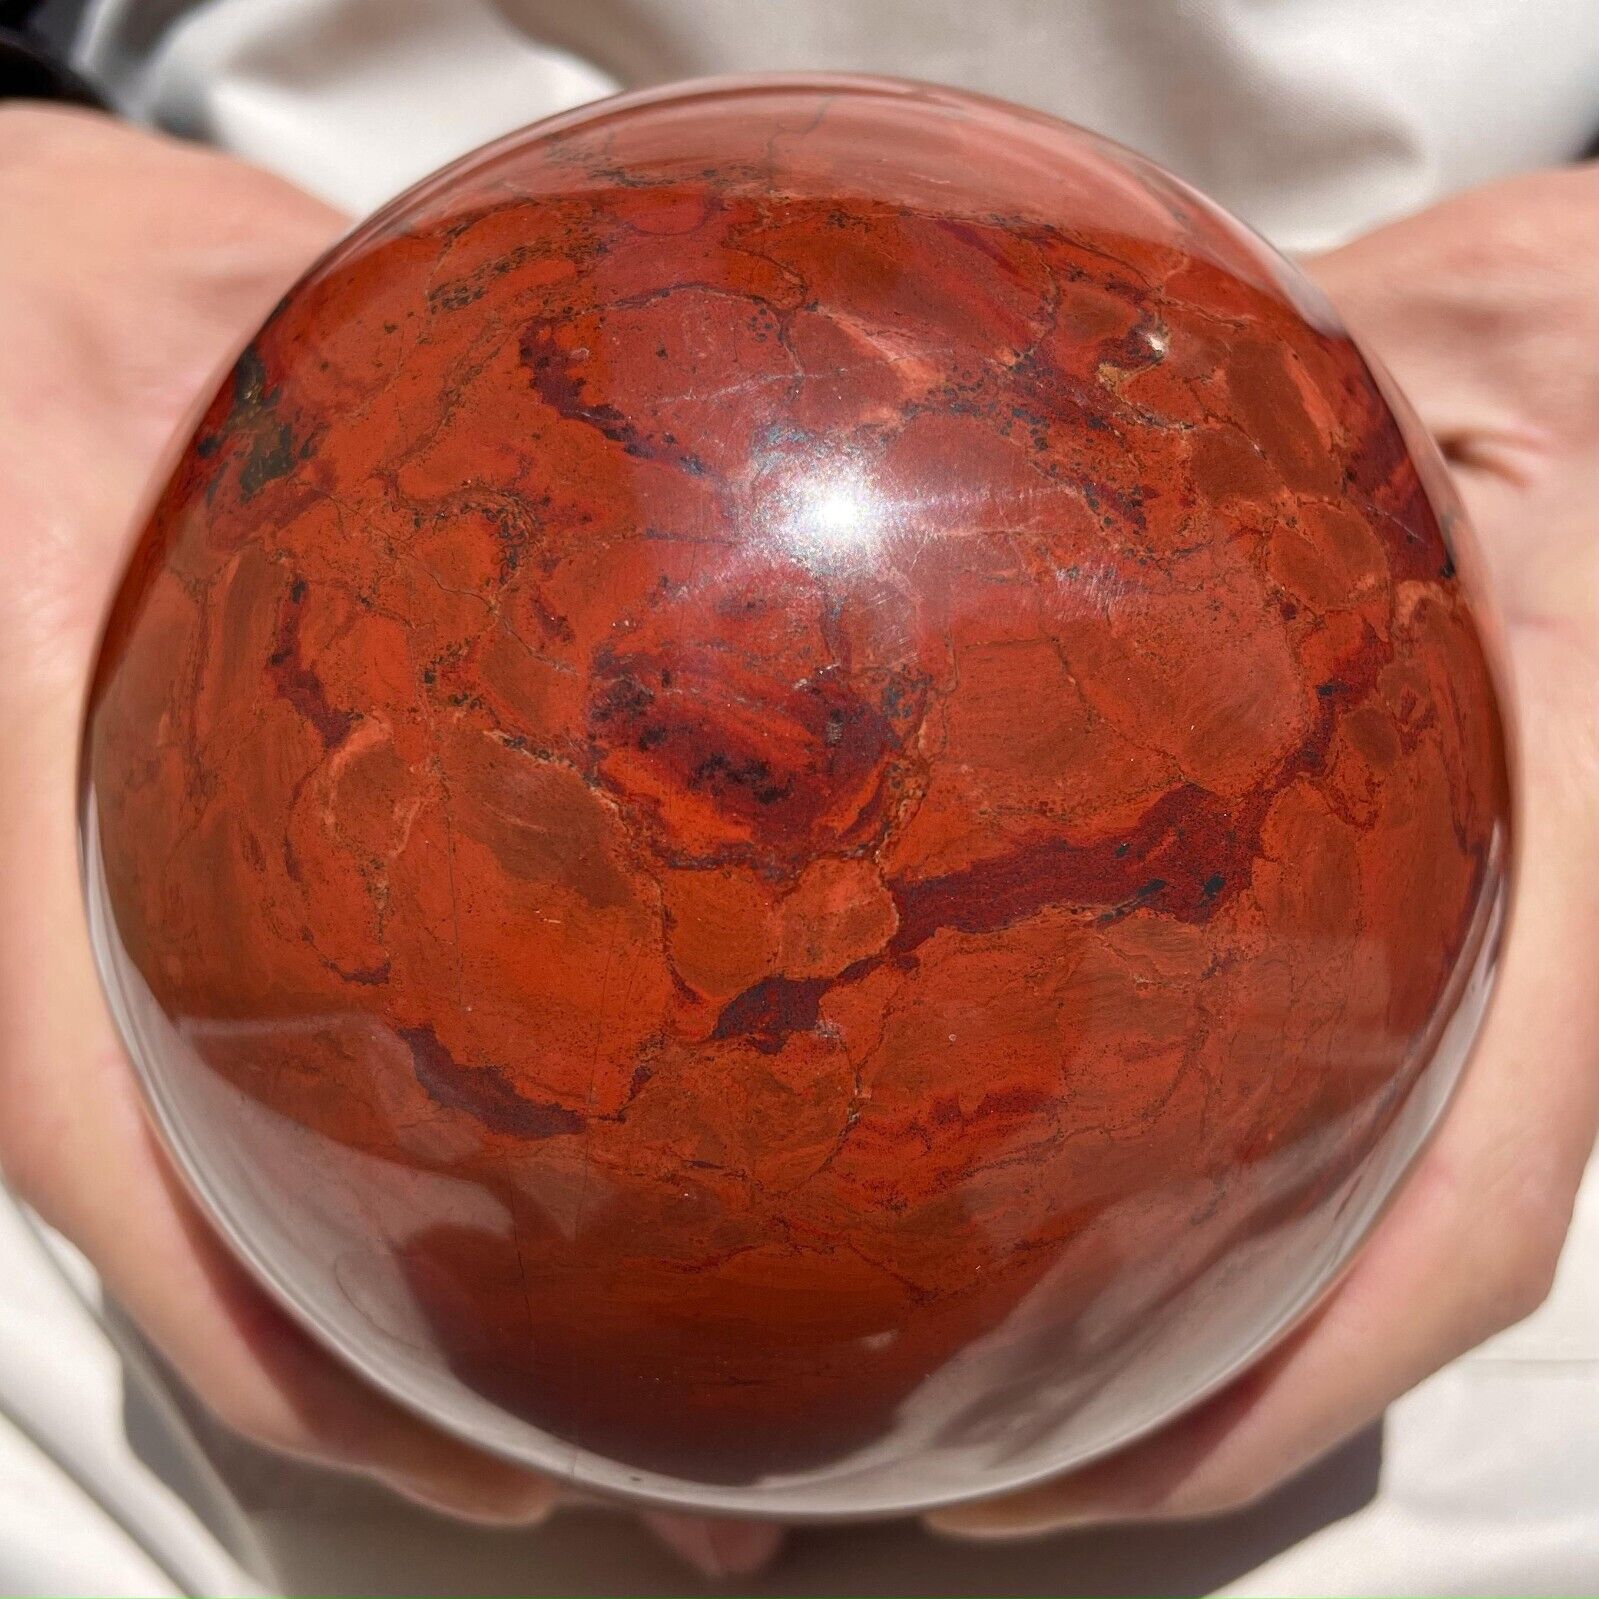 2010g Natural Red Jasper shpere Quartz Crystal Ball Healing Reiki Energy